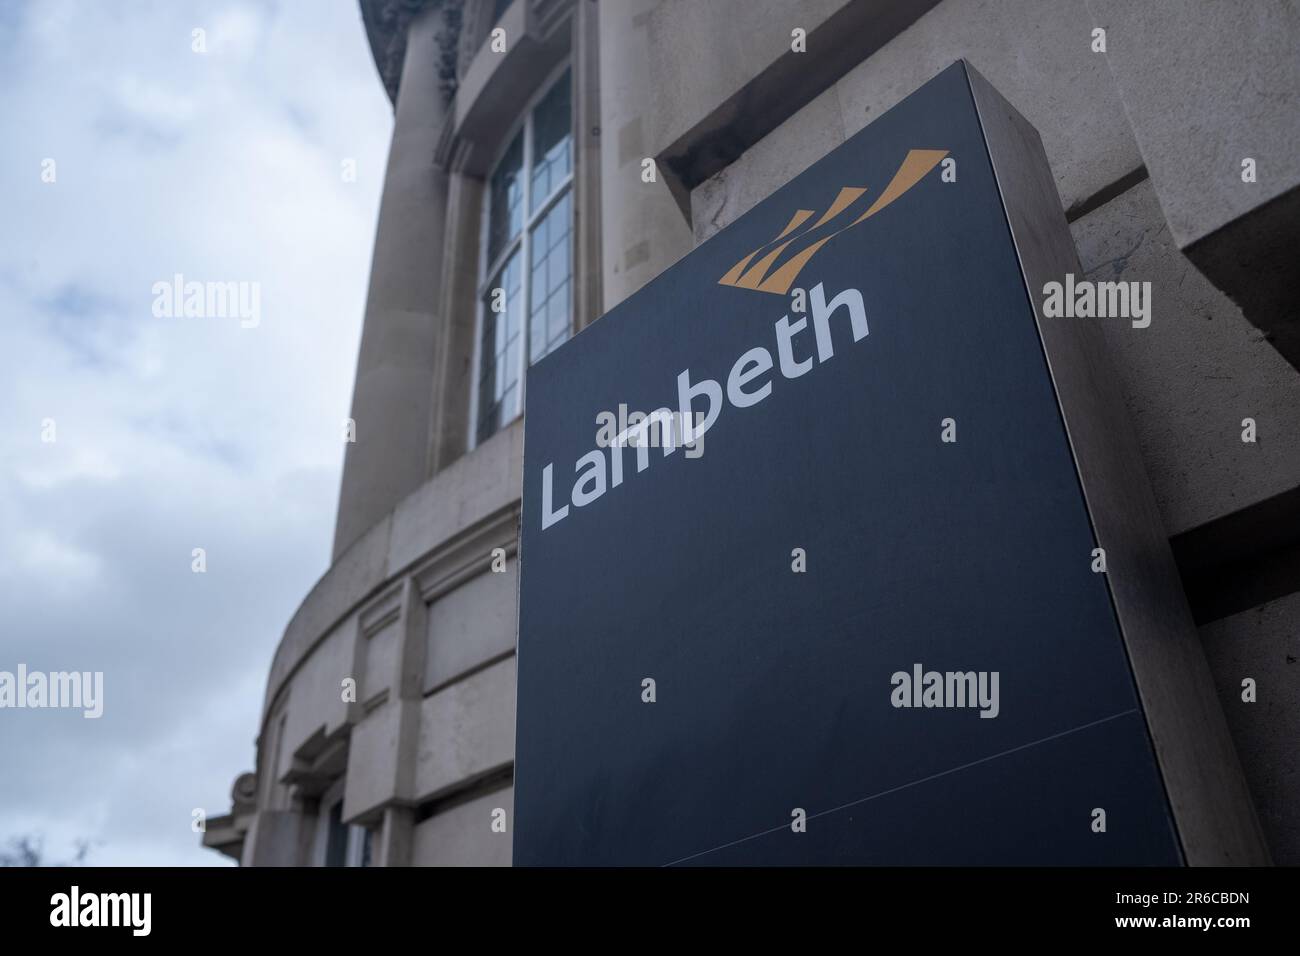 LONDON, MÄRZ 2023: Schild und Logo des Lambeth London Borough Council vor dem Town Hall-Gebäude in Brixton, Südwest-London Stockfoto